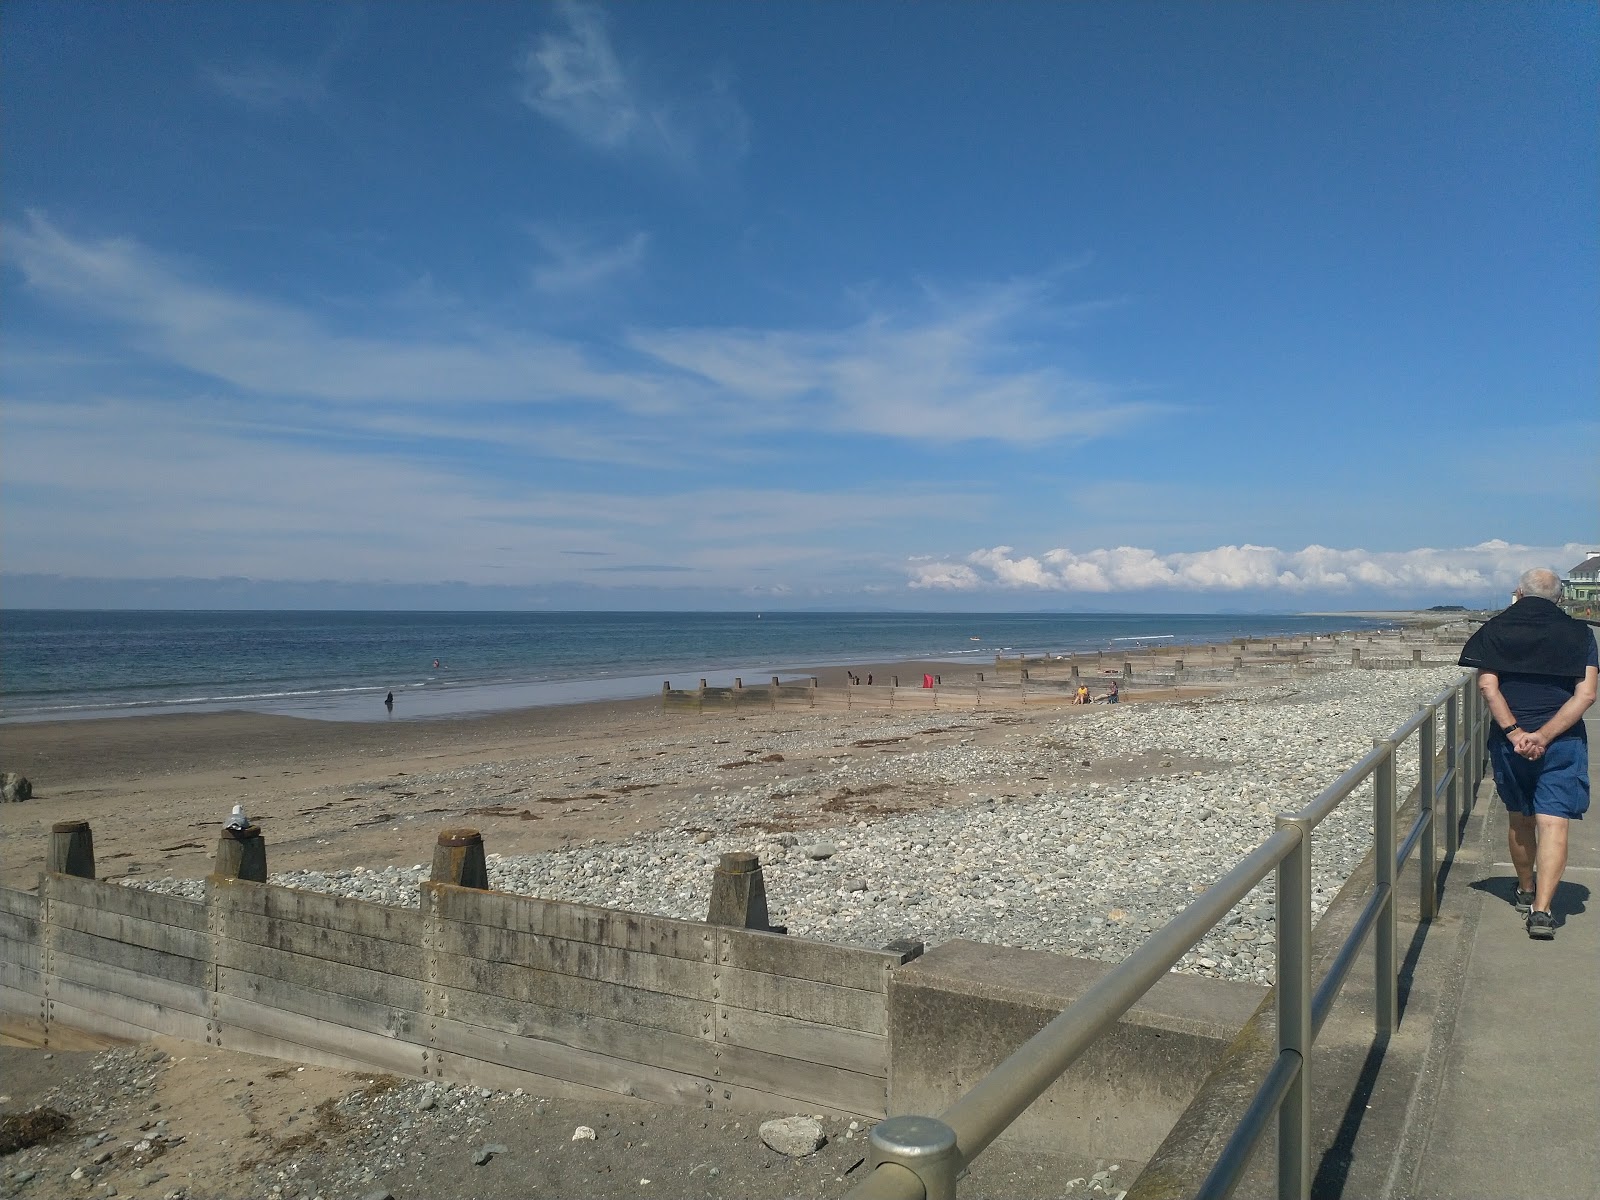 Zdjęcie Tywyn beach z poziomem czystości głoska bezdźwięczna